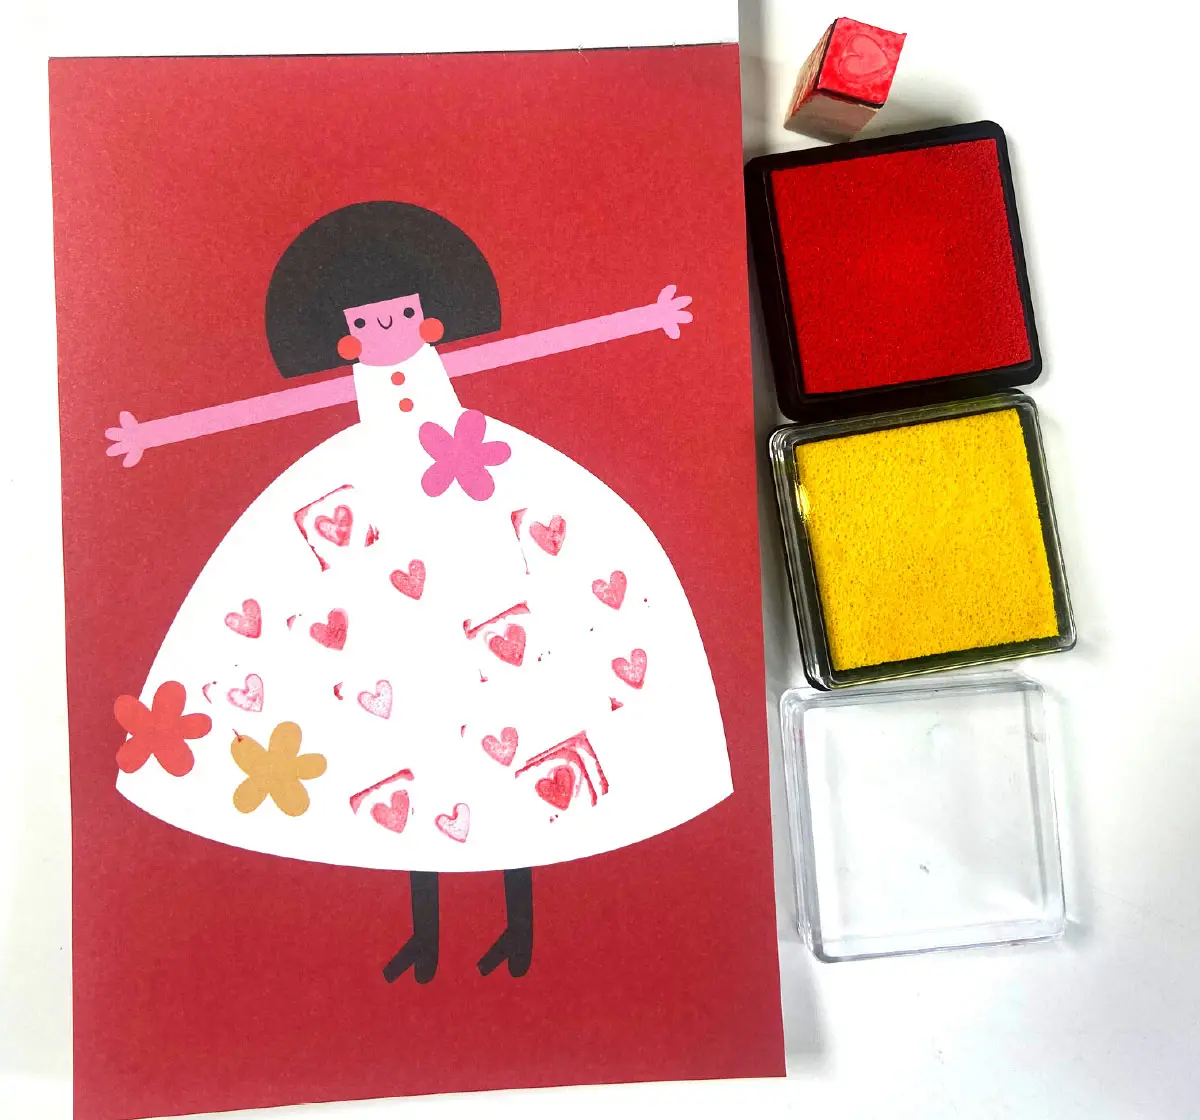 Scoobies Stamp Paint Art Set Multicolour, 4Y+